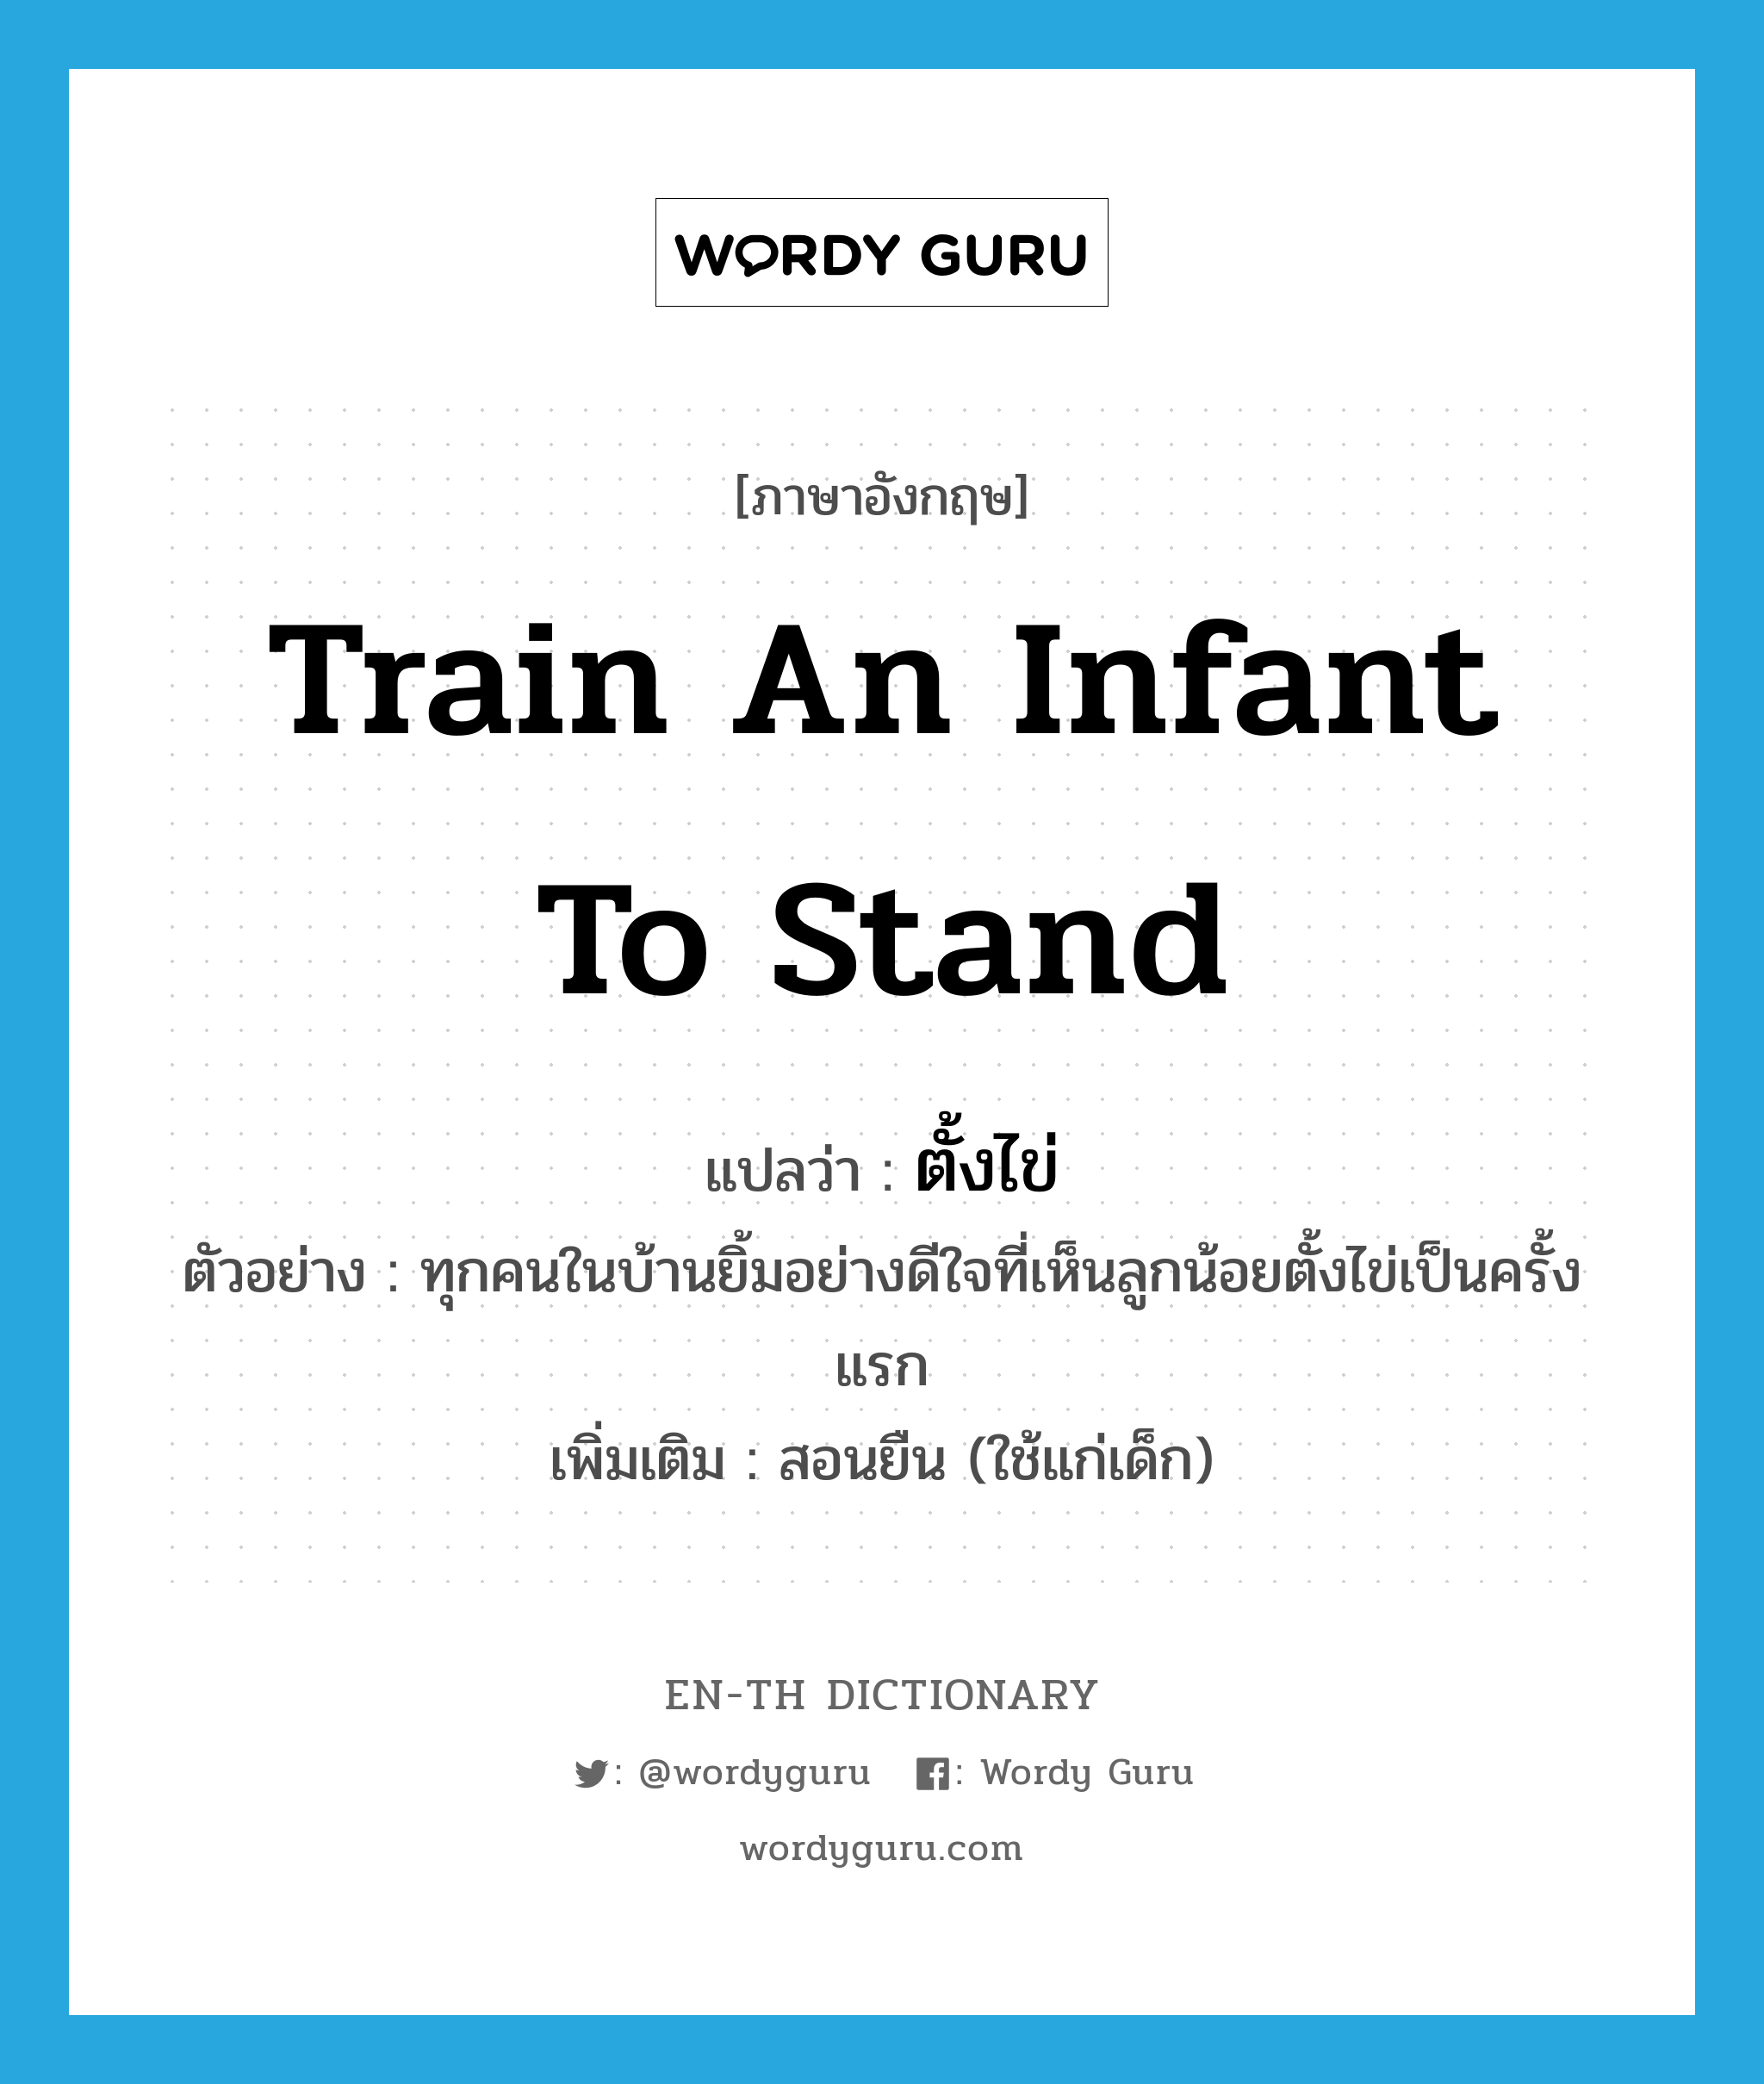 train an infant to stand แปลว่า?, คำศัพท์ภาษาอังกฤษ train an infant to stand แปลว่า ตั้งไข่ ประเภท V ตัวอย่าง ทุกคนในบ้านยิ้มอย่างดีใจที่เห็นลูกน้อยตั้งไข่เป็นครั้งแรก เพิ่มเติม สอนยืน (ใช้แก่เด็ก) หมวด V